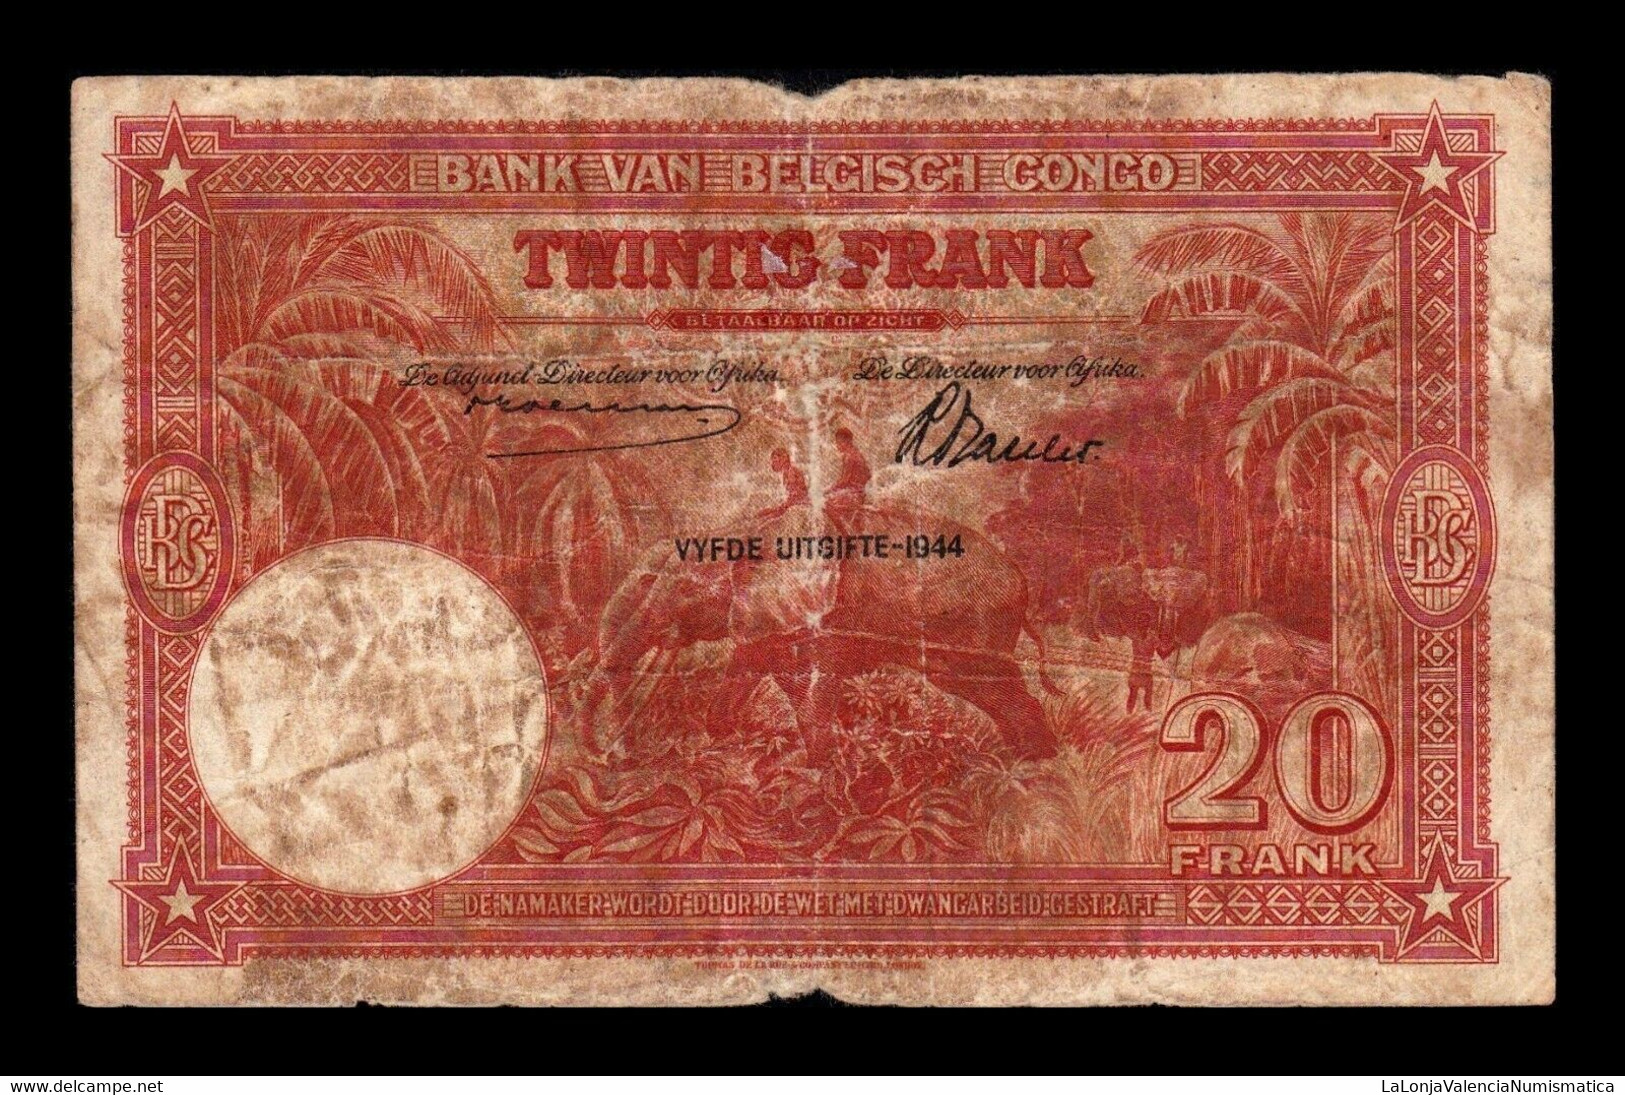 Congo Belga Belgium 20 Francs 1944 Pick 15d RC P - Banca Del Congo Belga